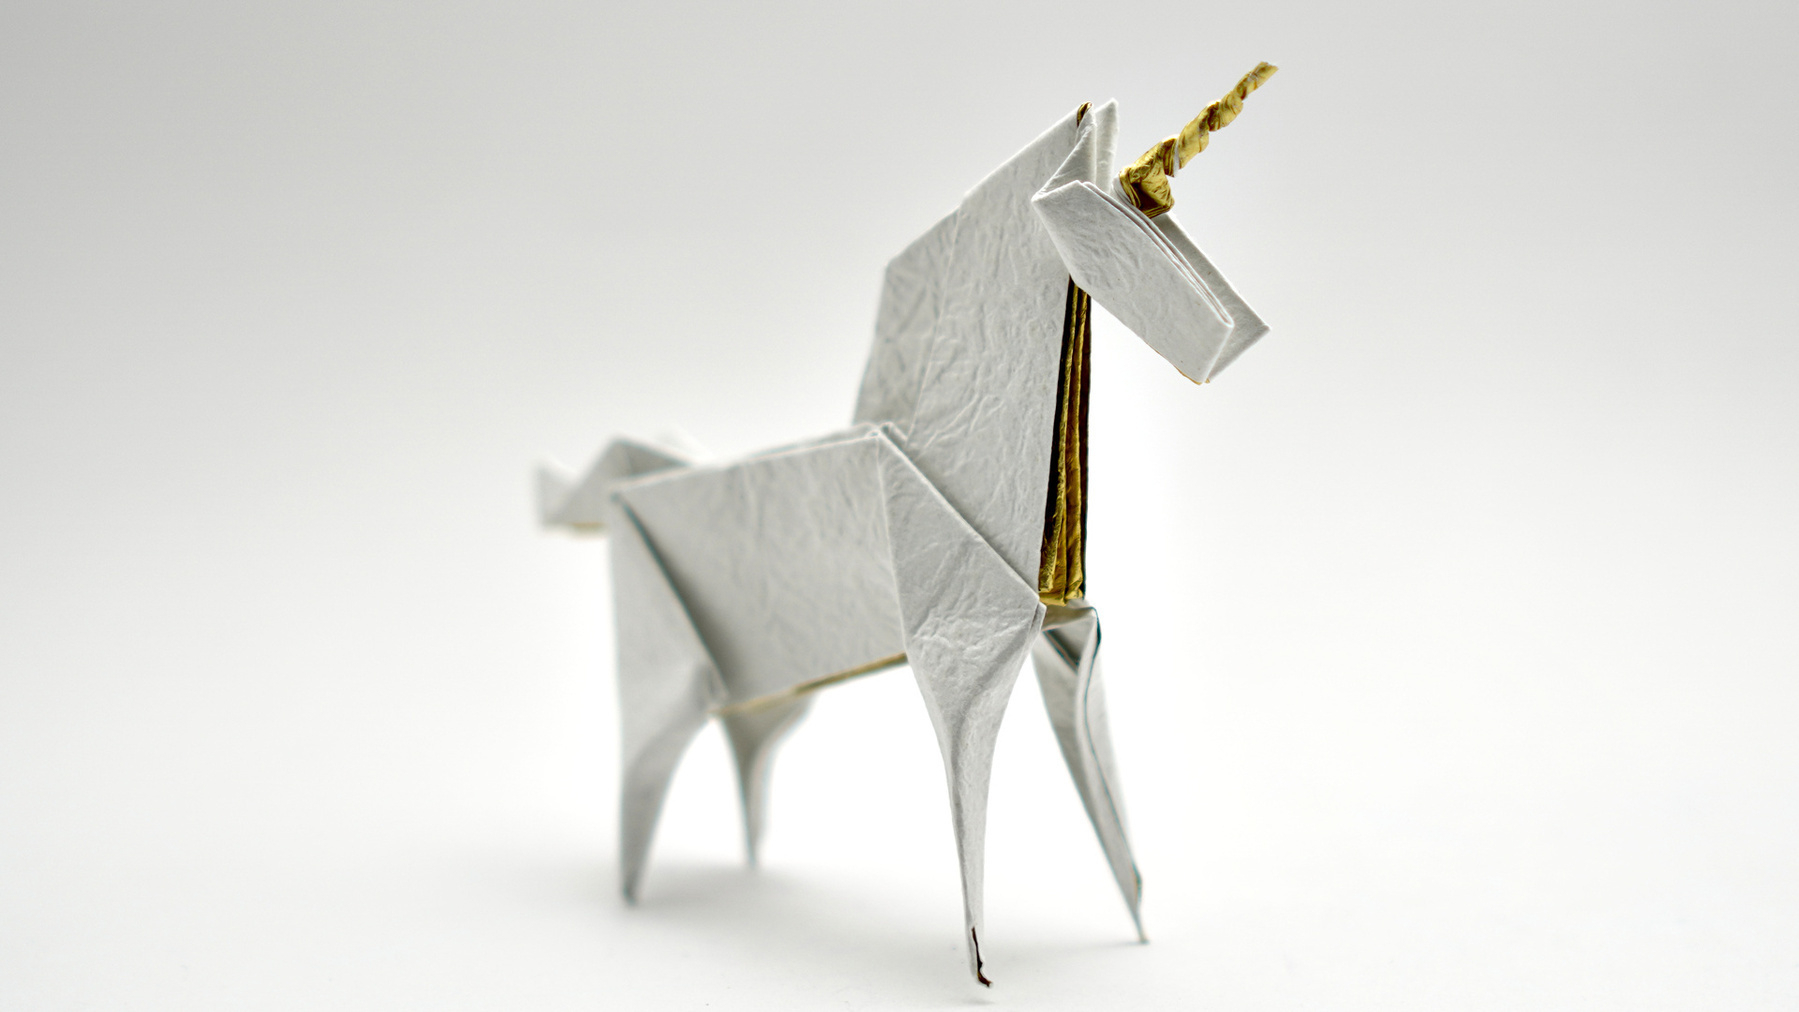 Photo of origami unicorn by Jo Nakashima